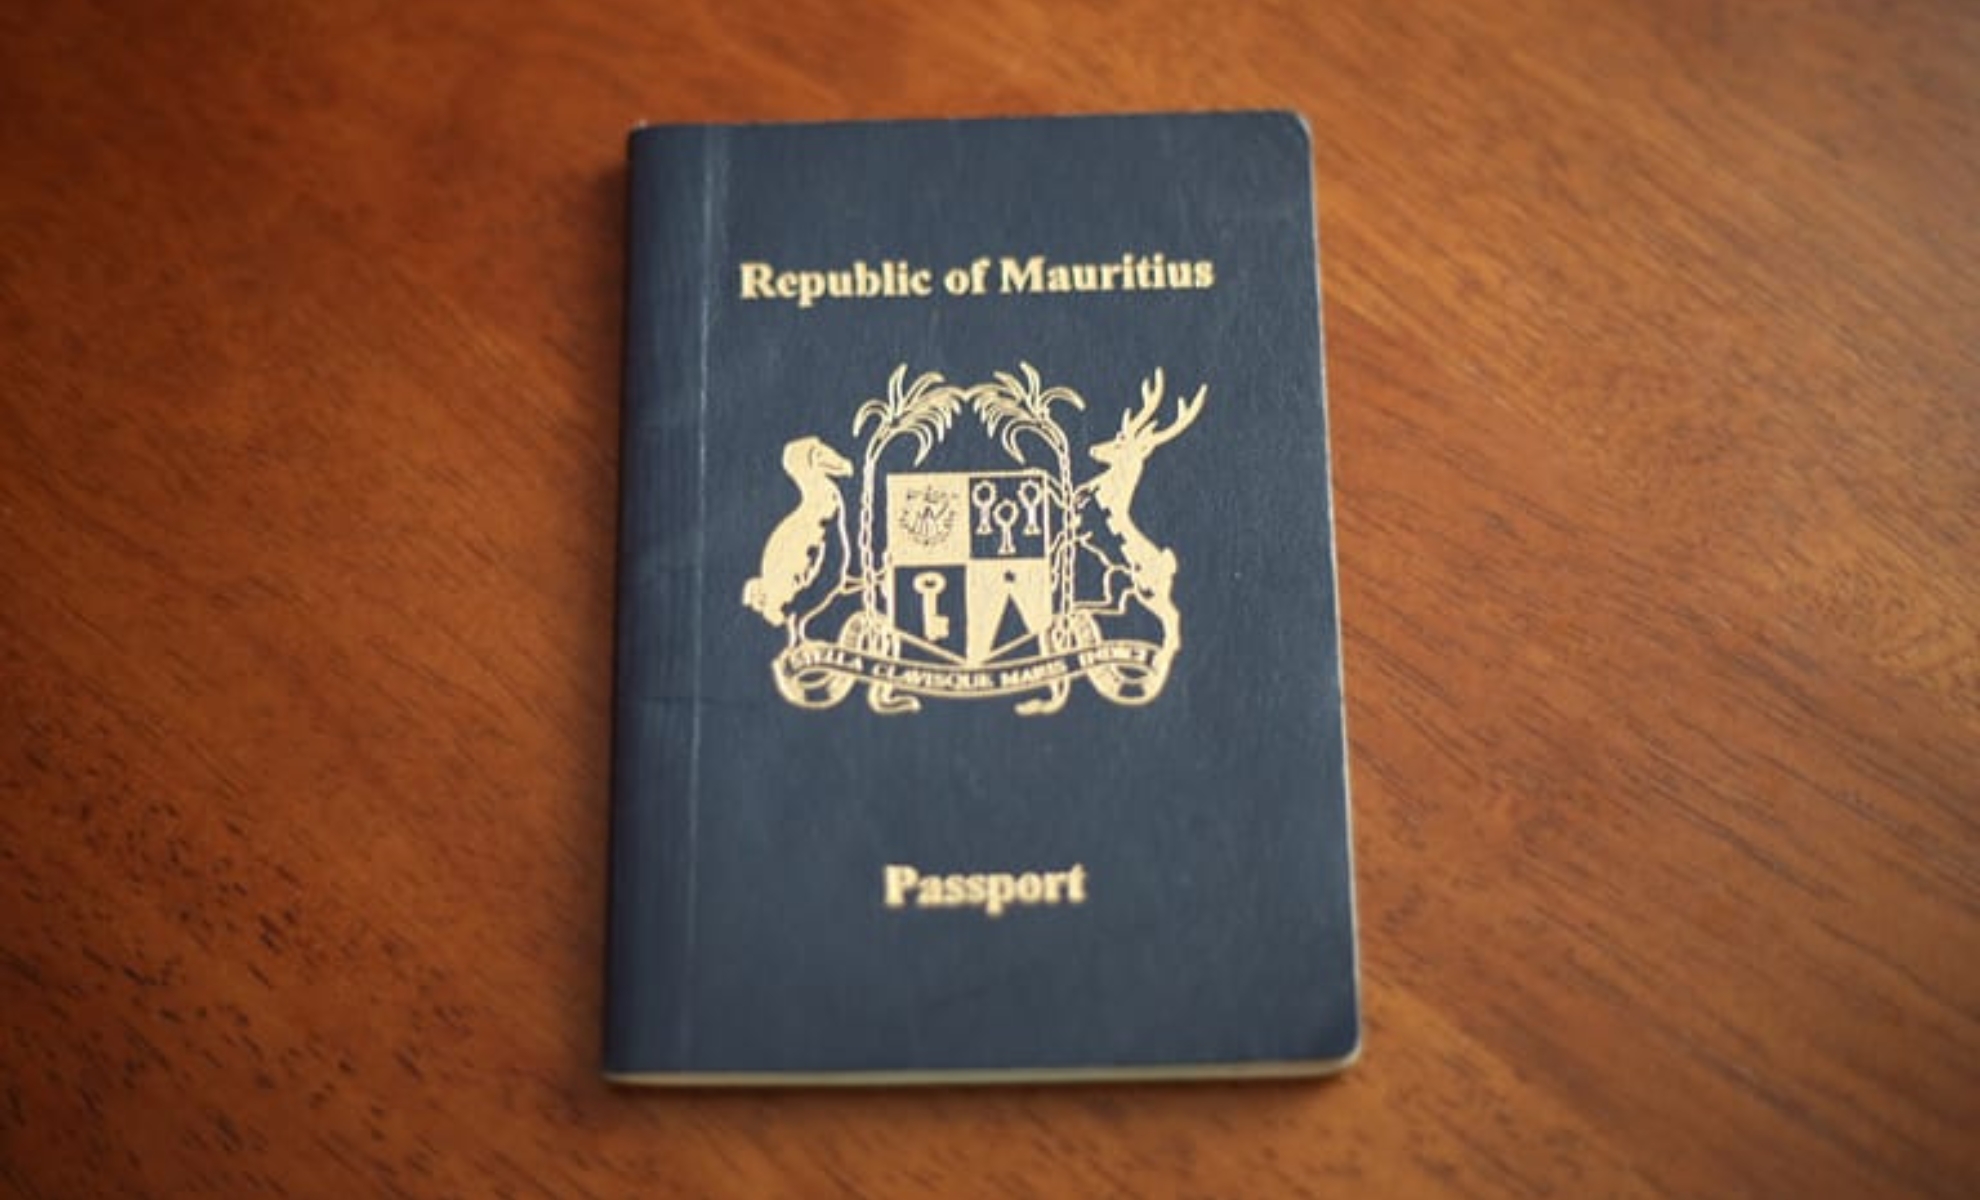 Le passport d'île Maurice